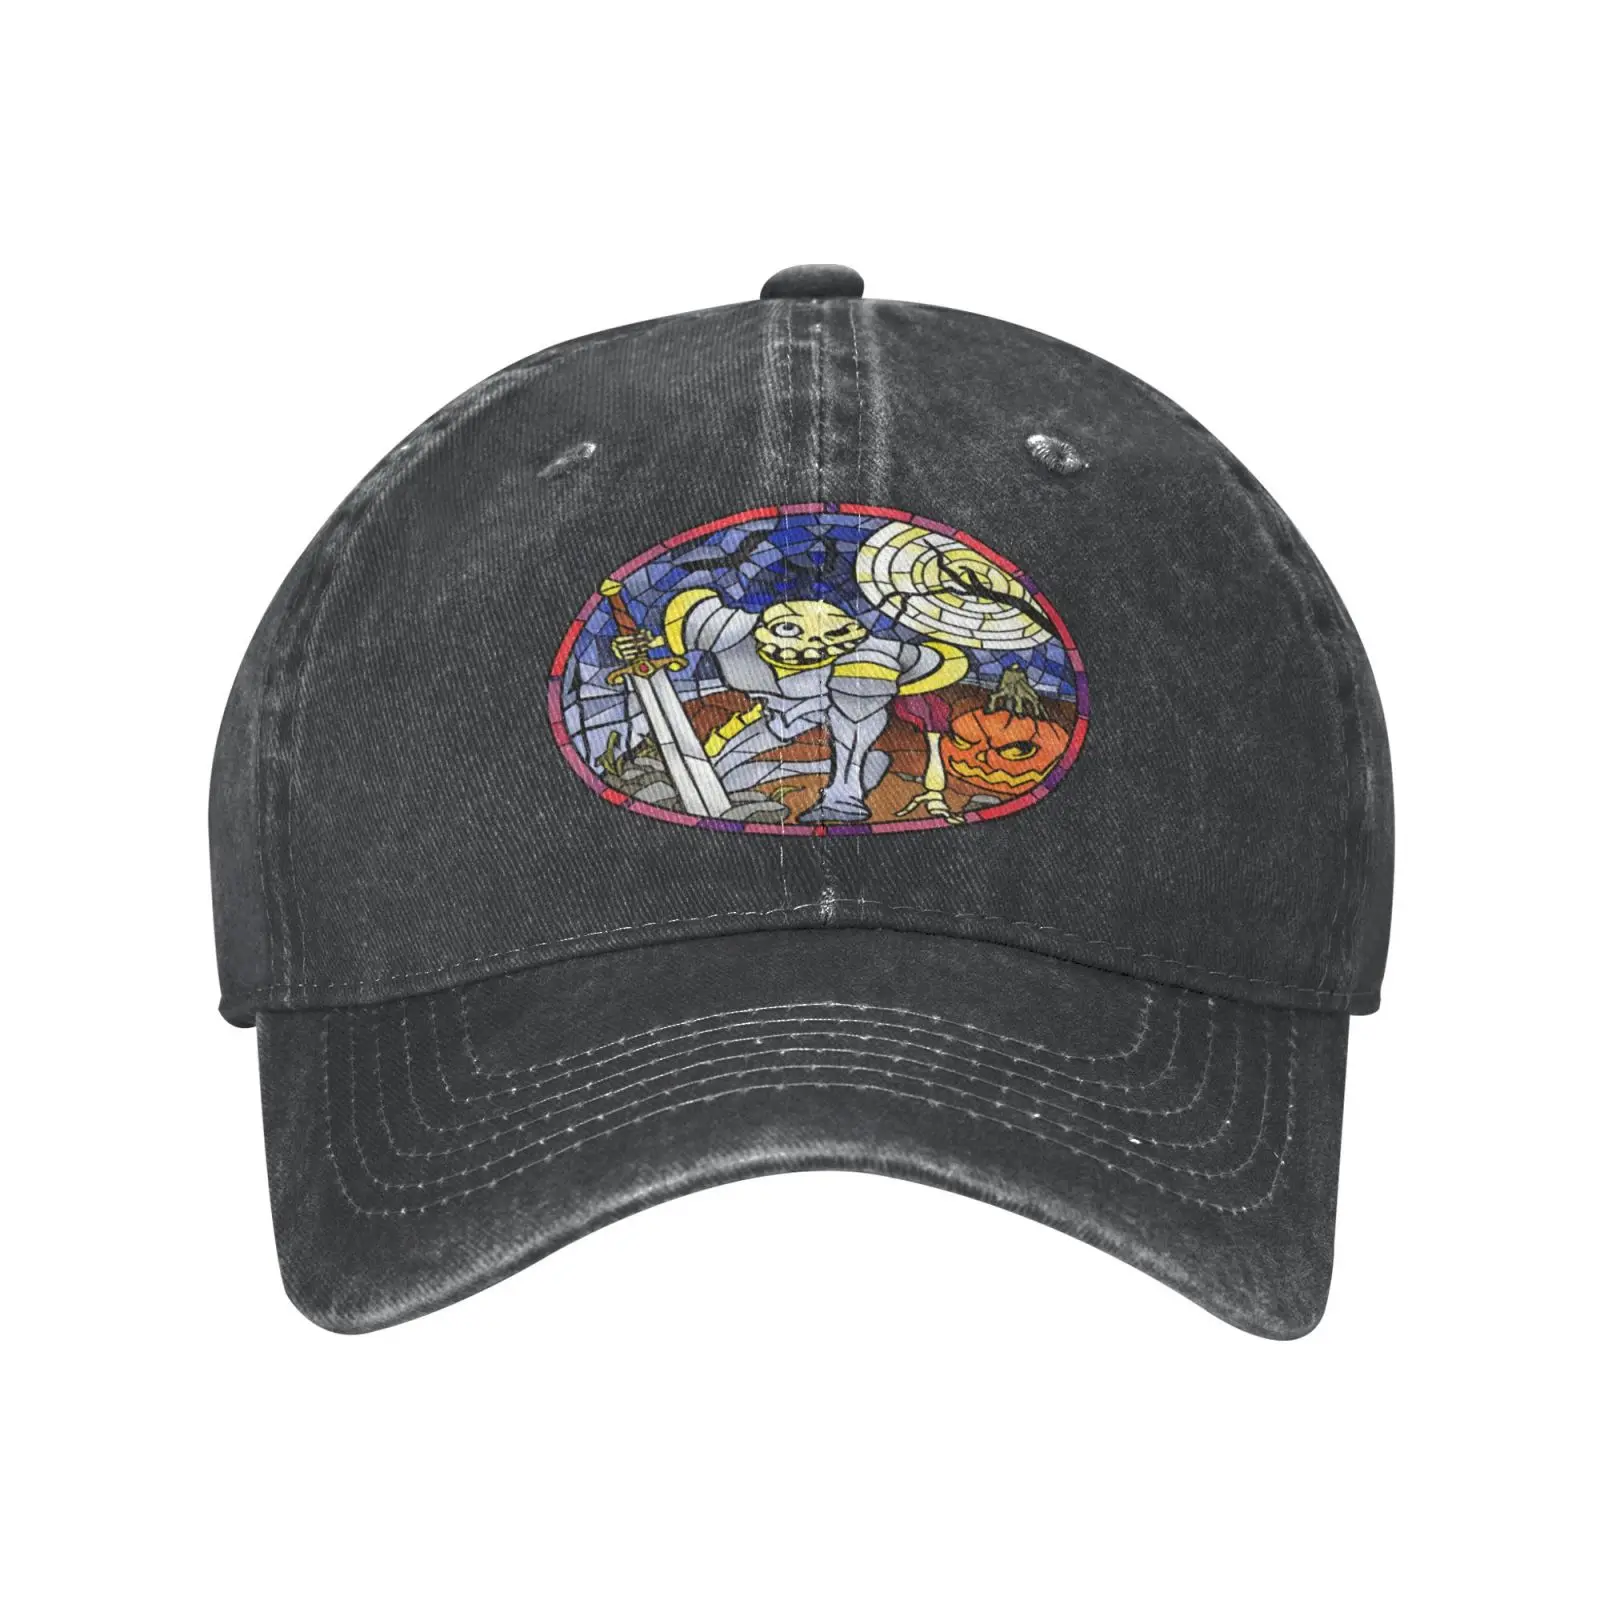 

Бейсболка Medievil Sir Daniel Fortesque окрашенная 4005, Мужская кепка, Кепка для мальчика, кепка s, кепка приключений для мальчика, летняя рыбалка